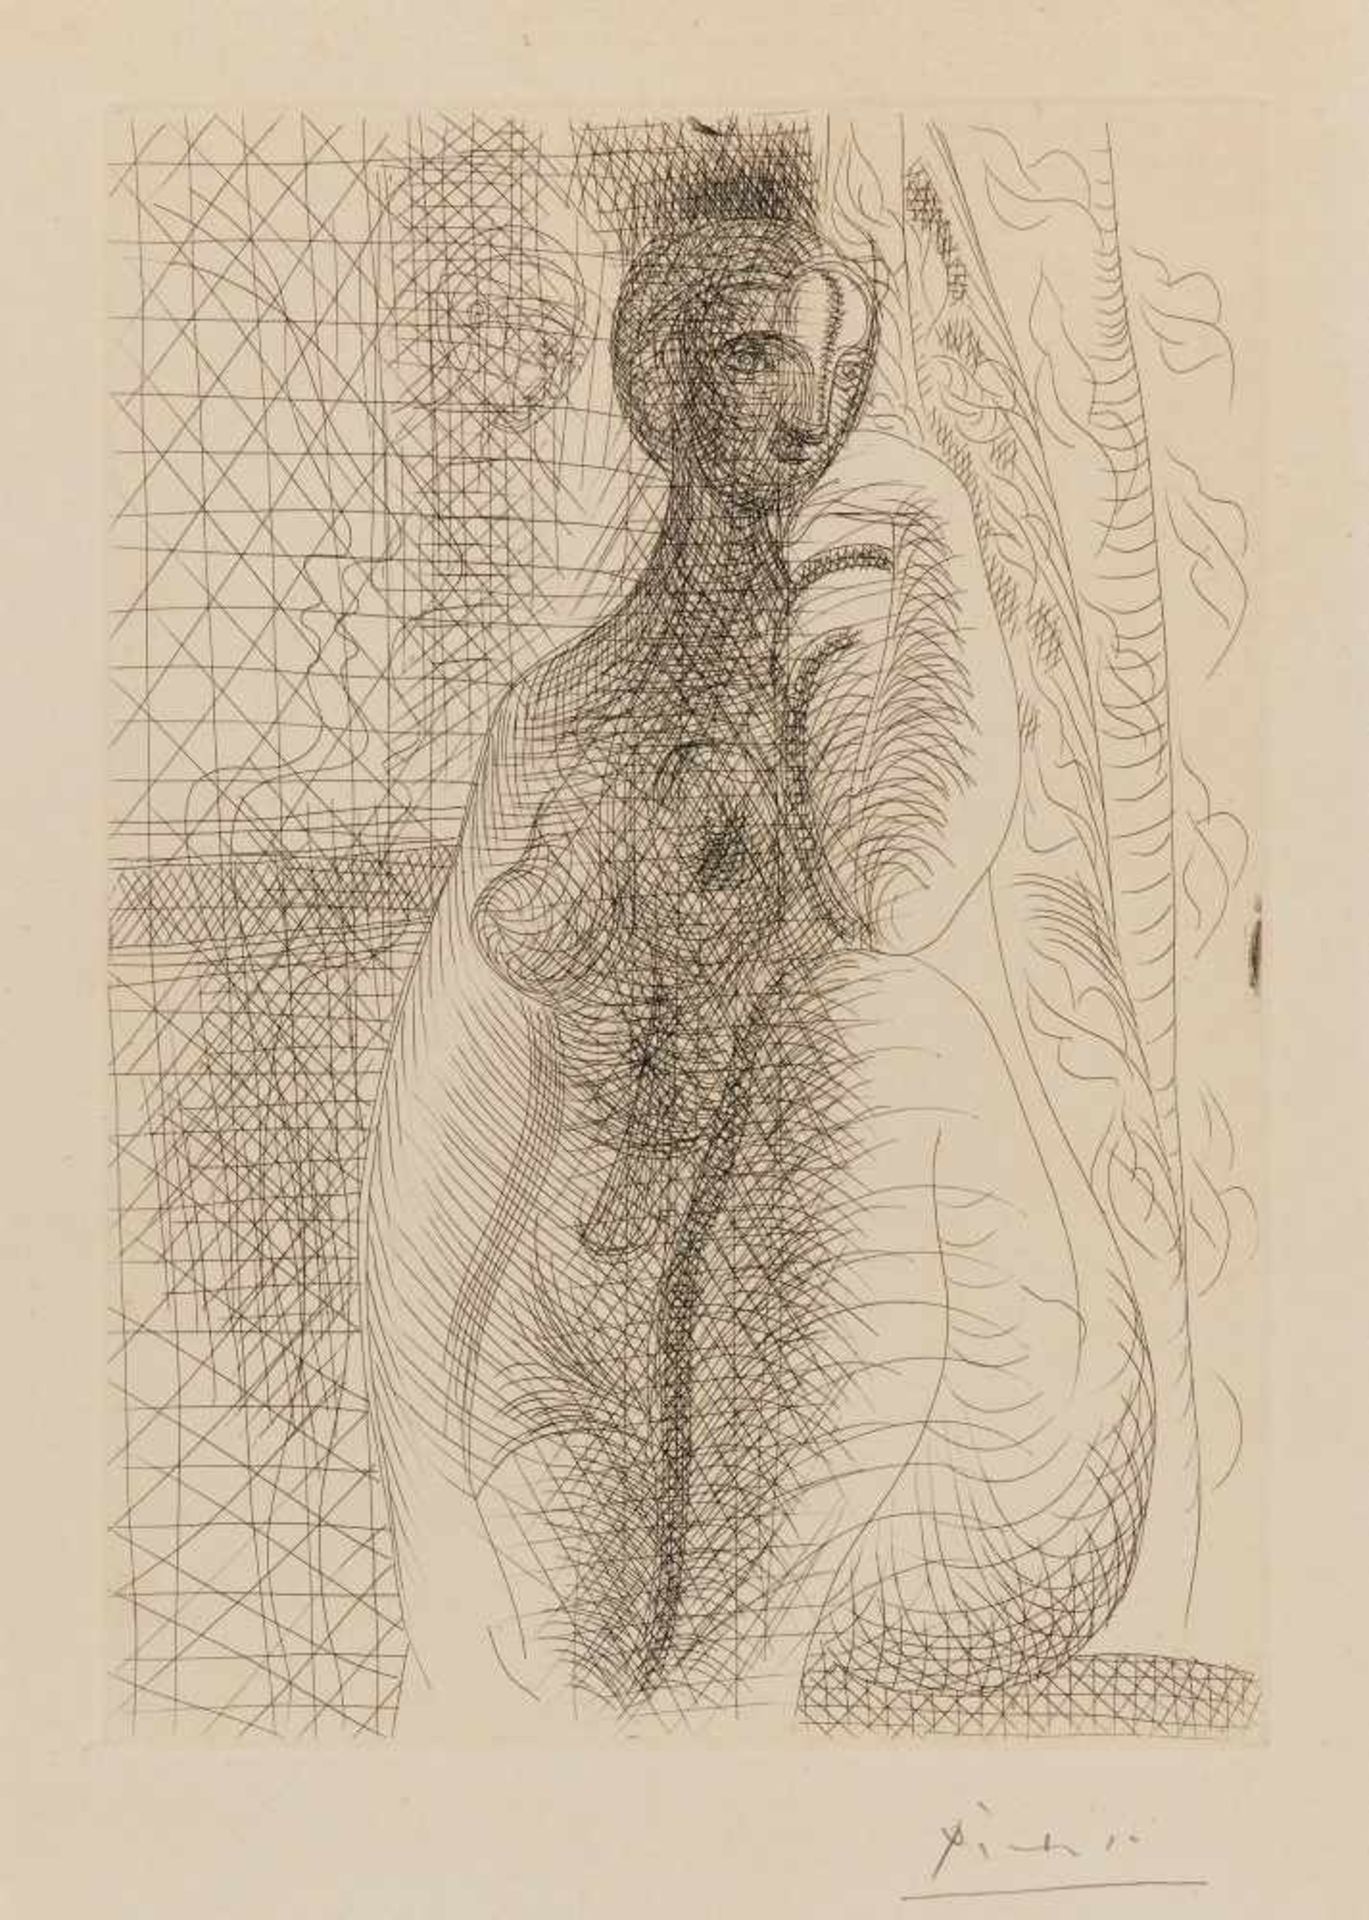 Picasso, Pablo1881 Malaga - 1973 MouginsFemme nue à la jambe pliée. 1931. Etching on vellum. 31.3